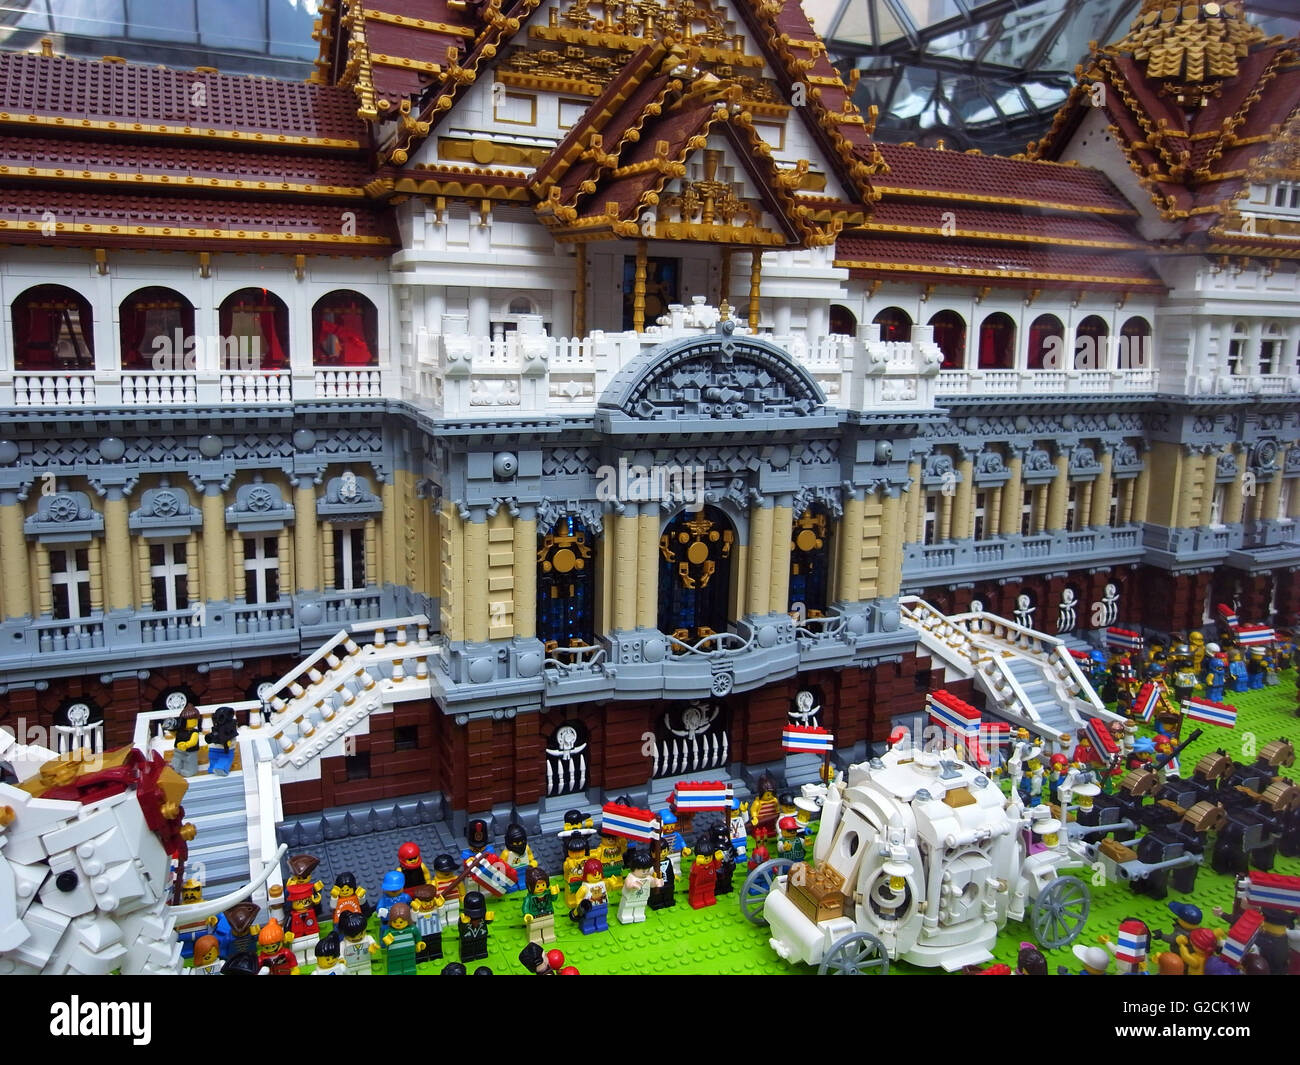 Modello di Lego Thailandia paesaggio tempio edificio tradizionale antica Santa Casa Imperial palace toy divertimento diurno white elephant persone Foto Stock